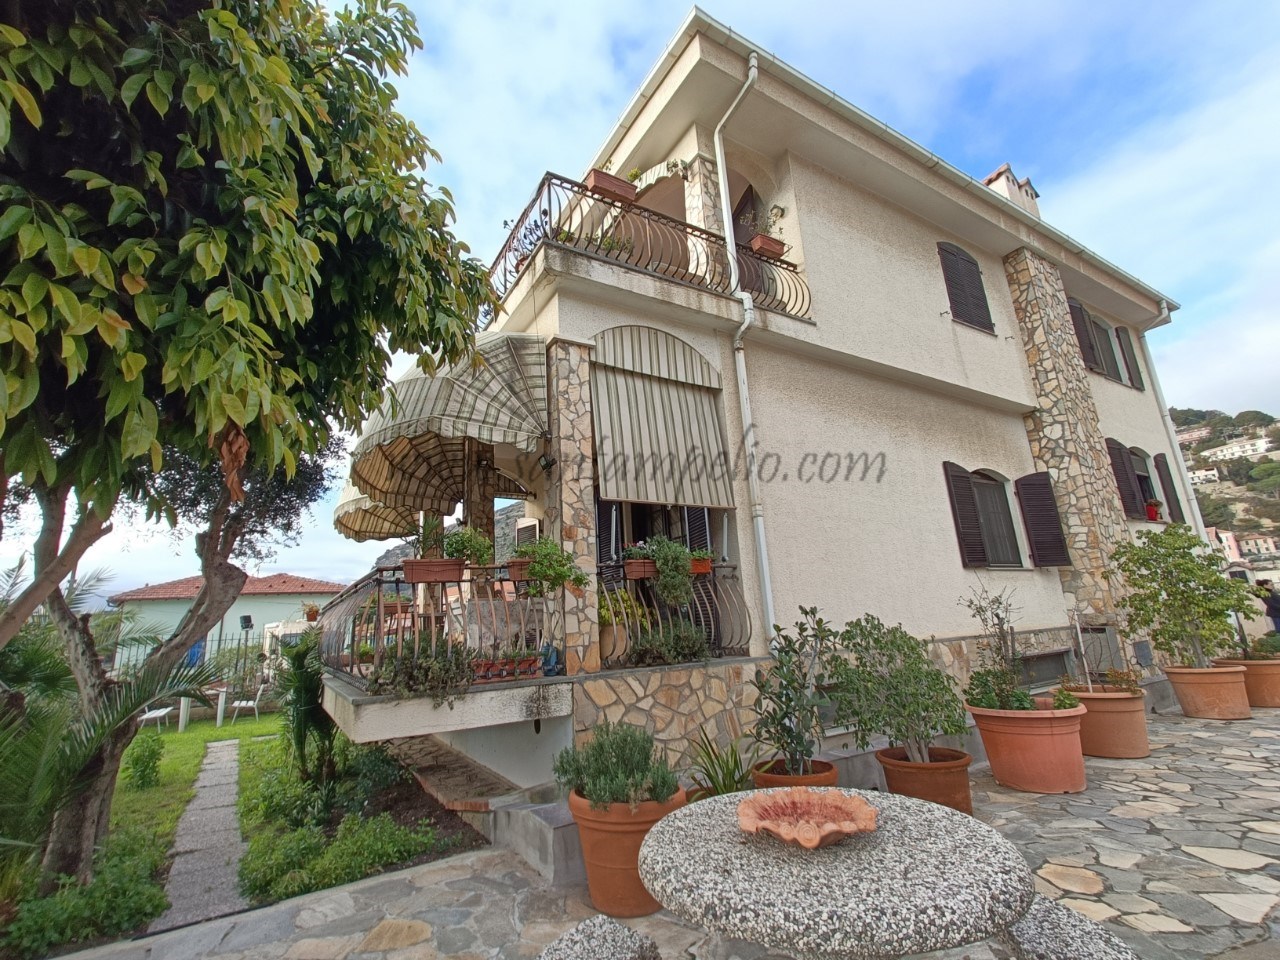 Villa in vendita a Ventimiglia, 10 locali, prezzo € 1.300.000 | CambioCasa.it